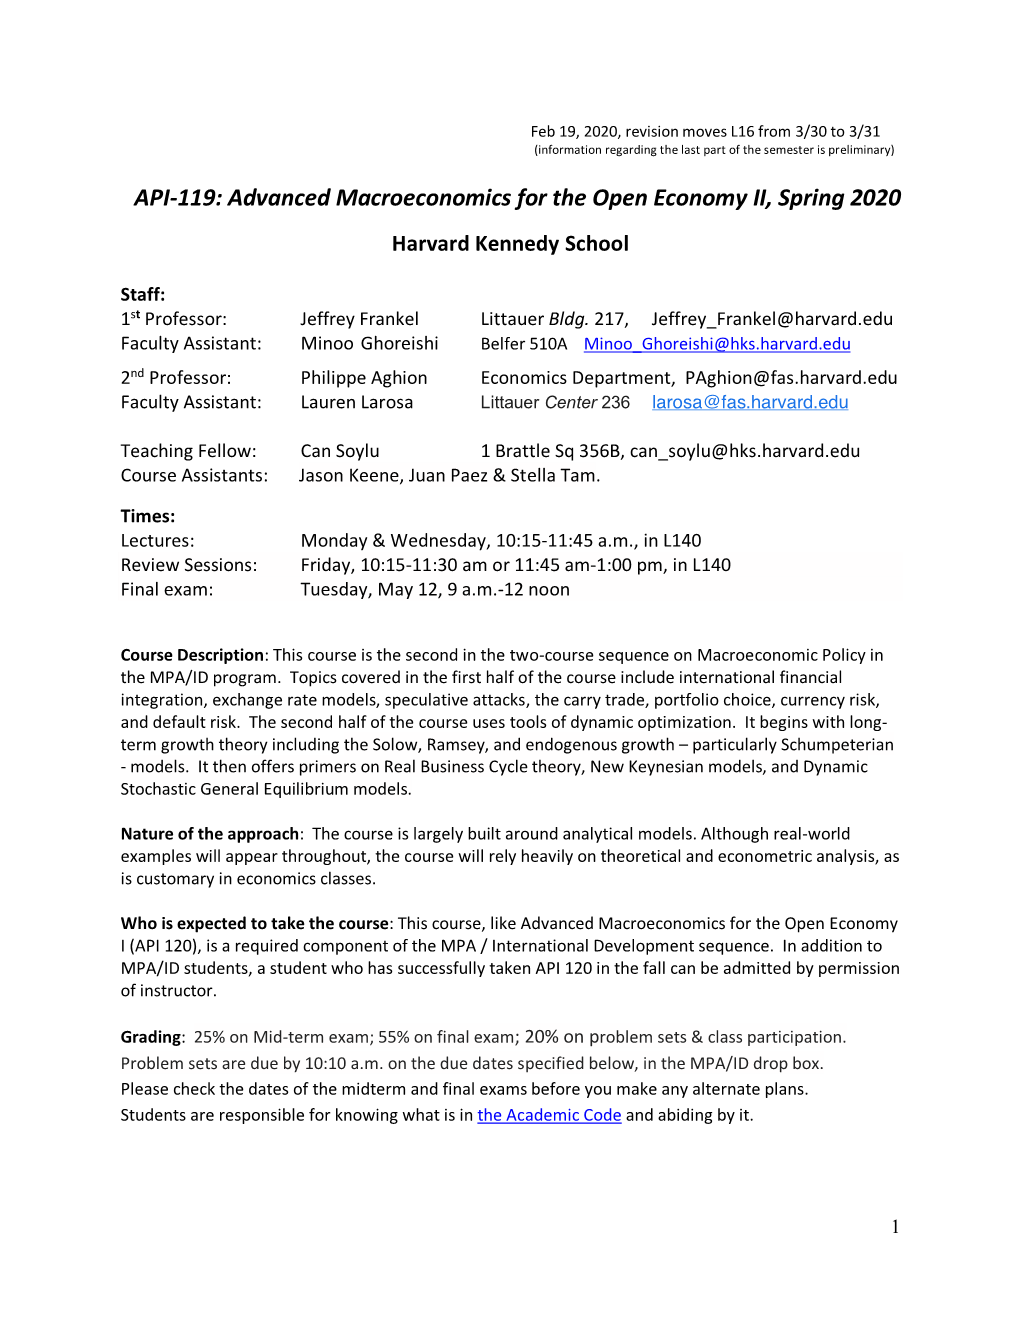 API-119: Advanced Macroeconomics for the Open Economy II, Spring 2020